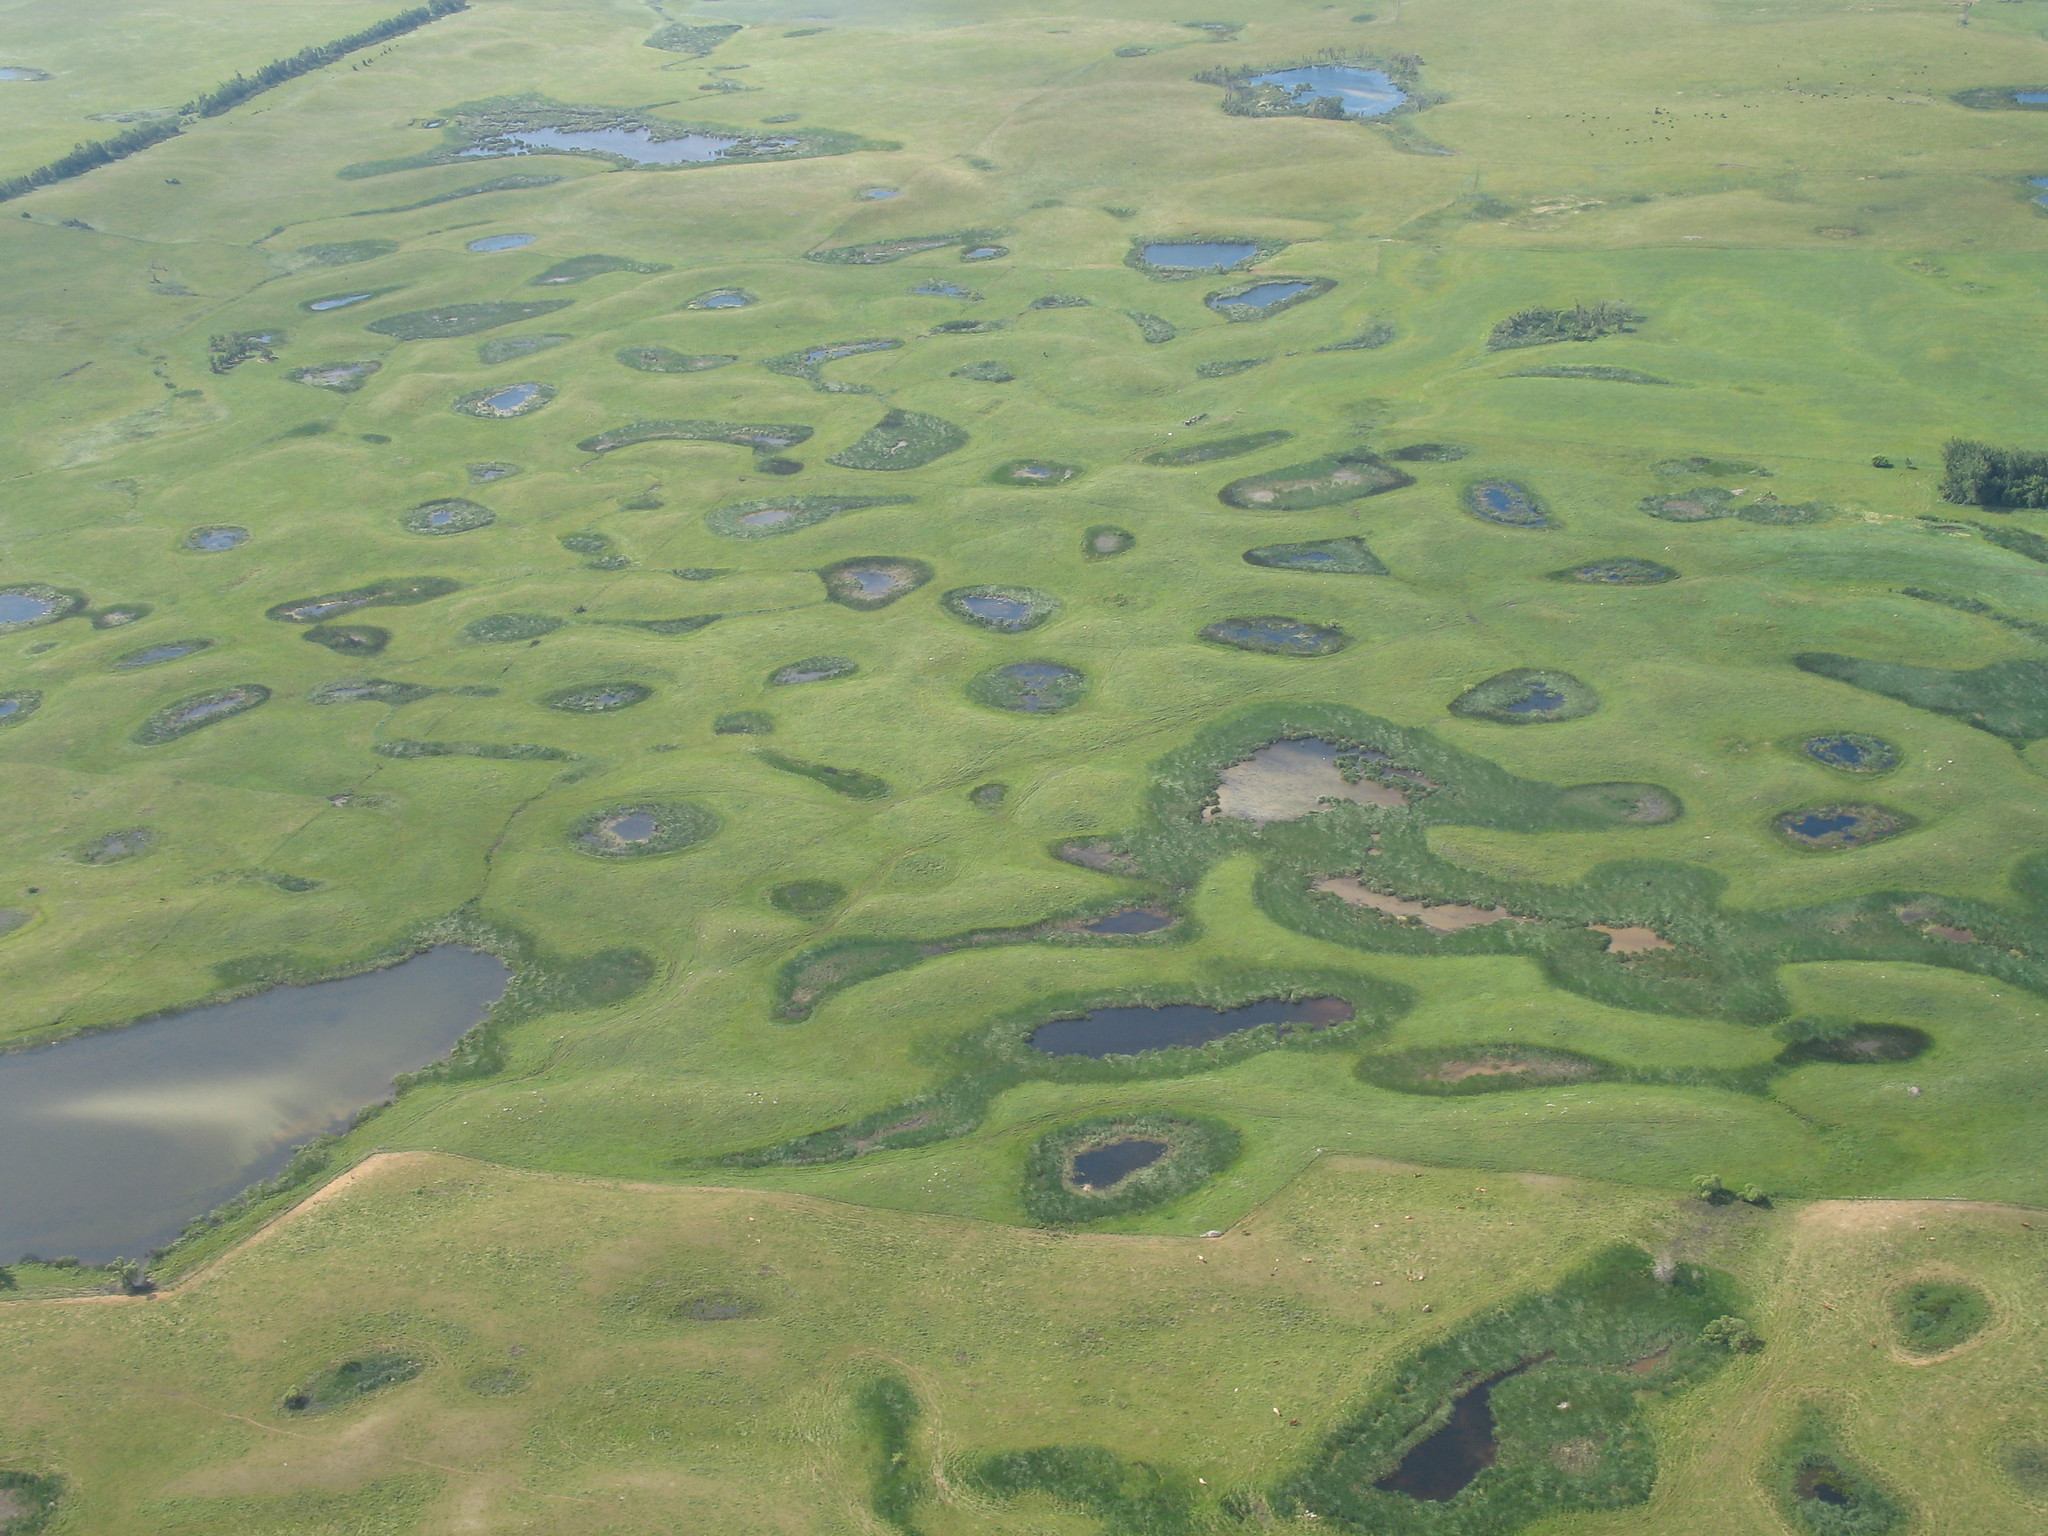 American Prairie Reserve Grows by 2,000 Key Wetland Acres